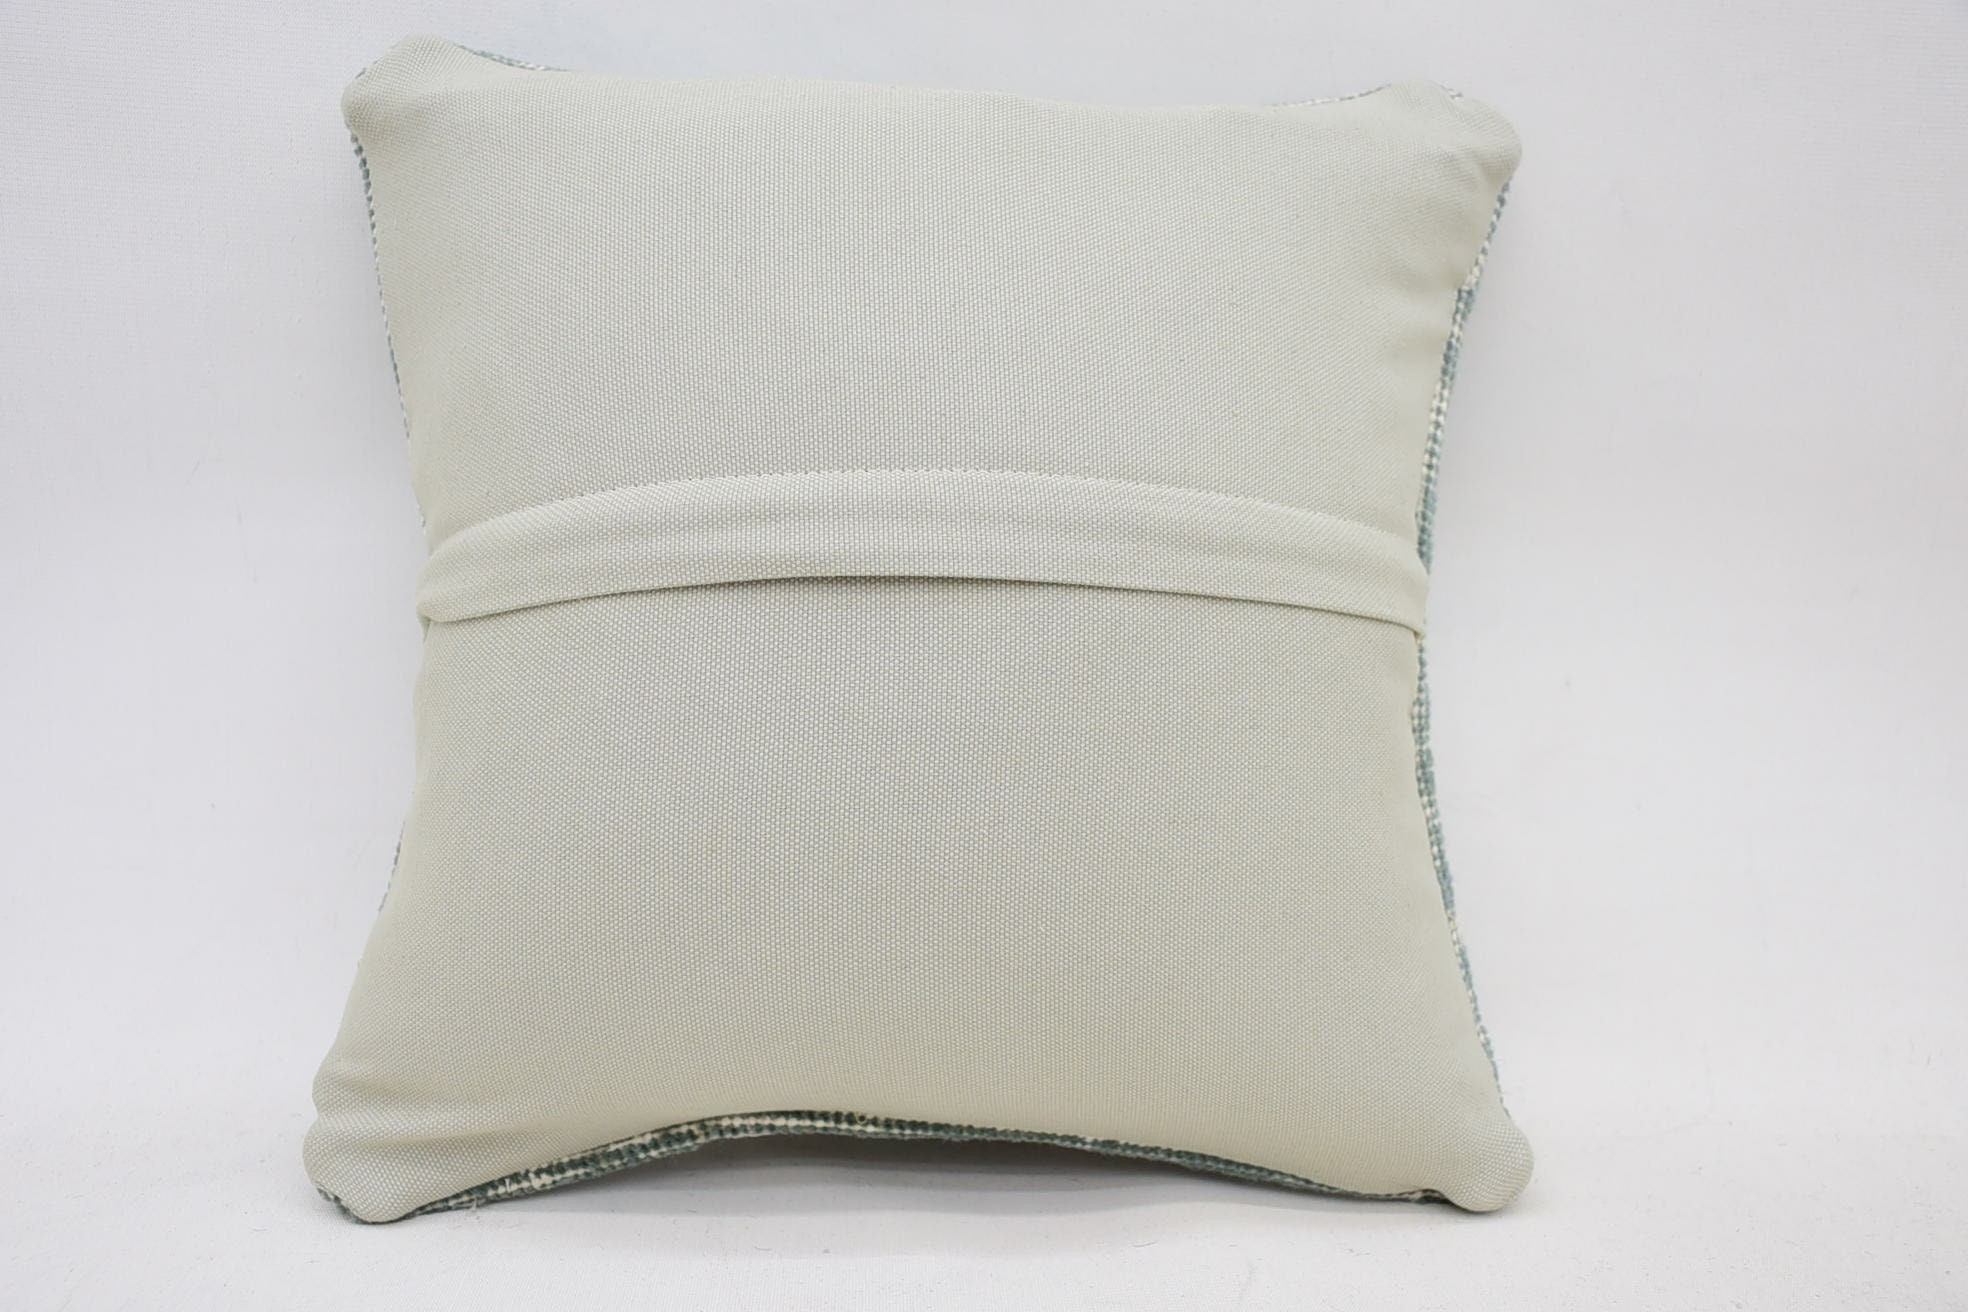 Antique Pillows, Vintage Kilim Pillow Pillow Case, Southwestern Cushion Case, Kilim Pillow Cover, 14"x14" Blue Pillow Cover, Kilim Pillow